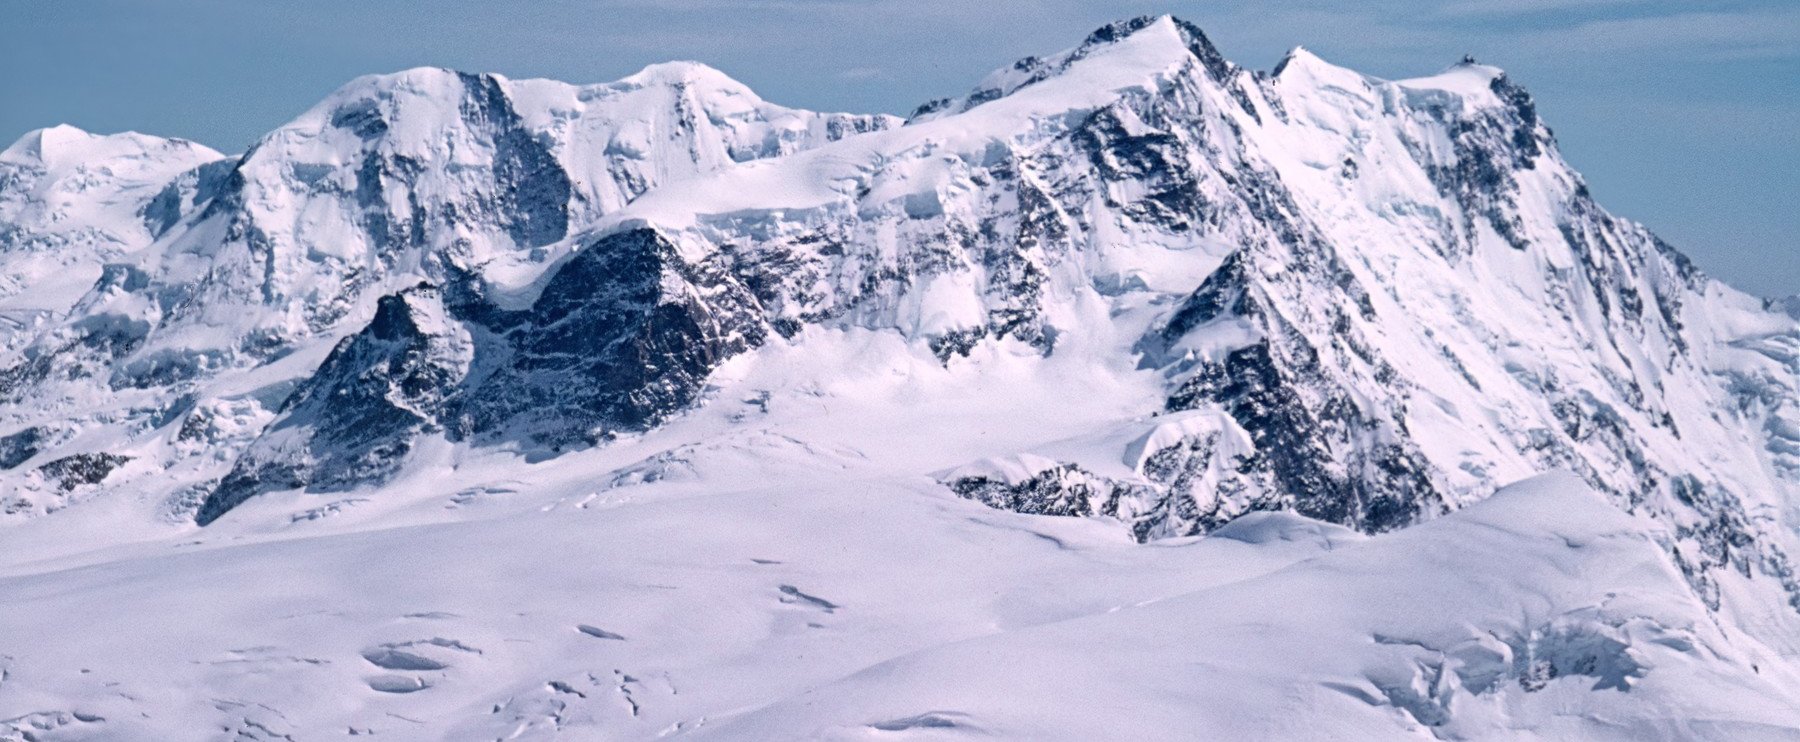 Mumifikálódott házaspár olvadt ki a jég alól egy svájci sípályán